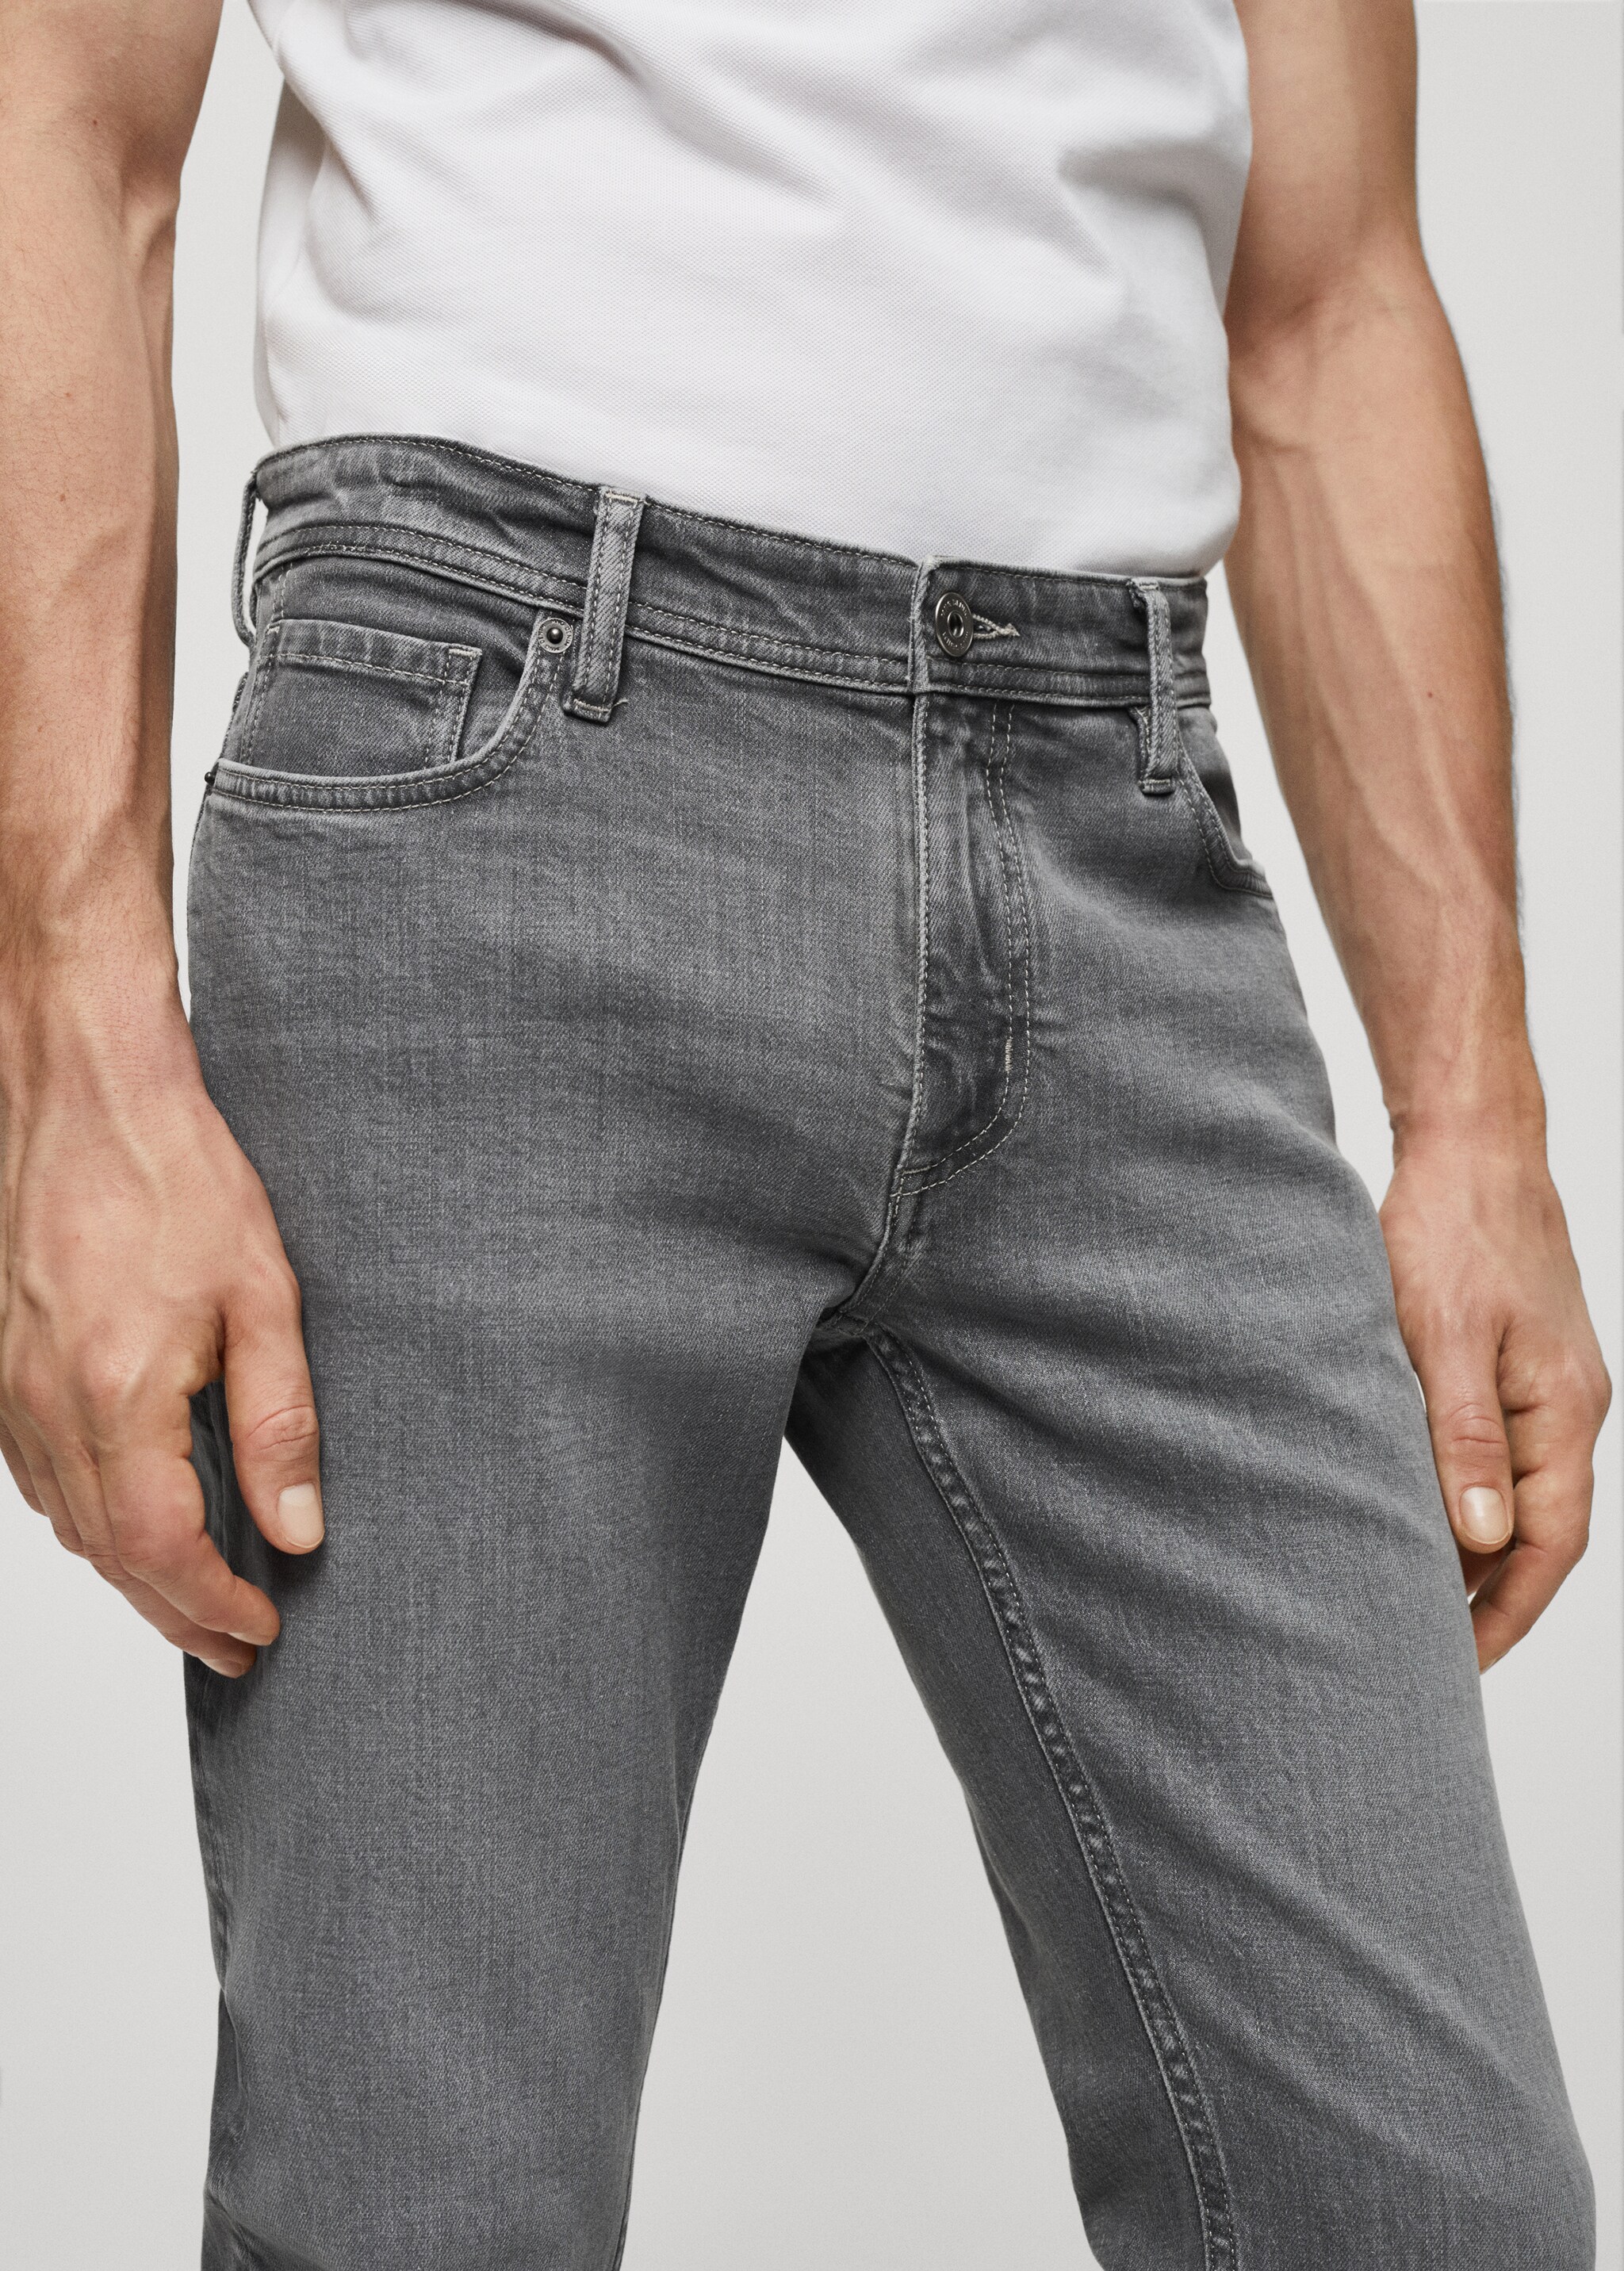 Jeans Jan slim fit - Pormenor do artigo 1